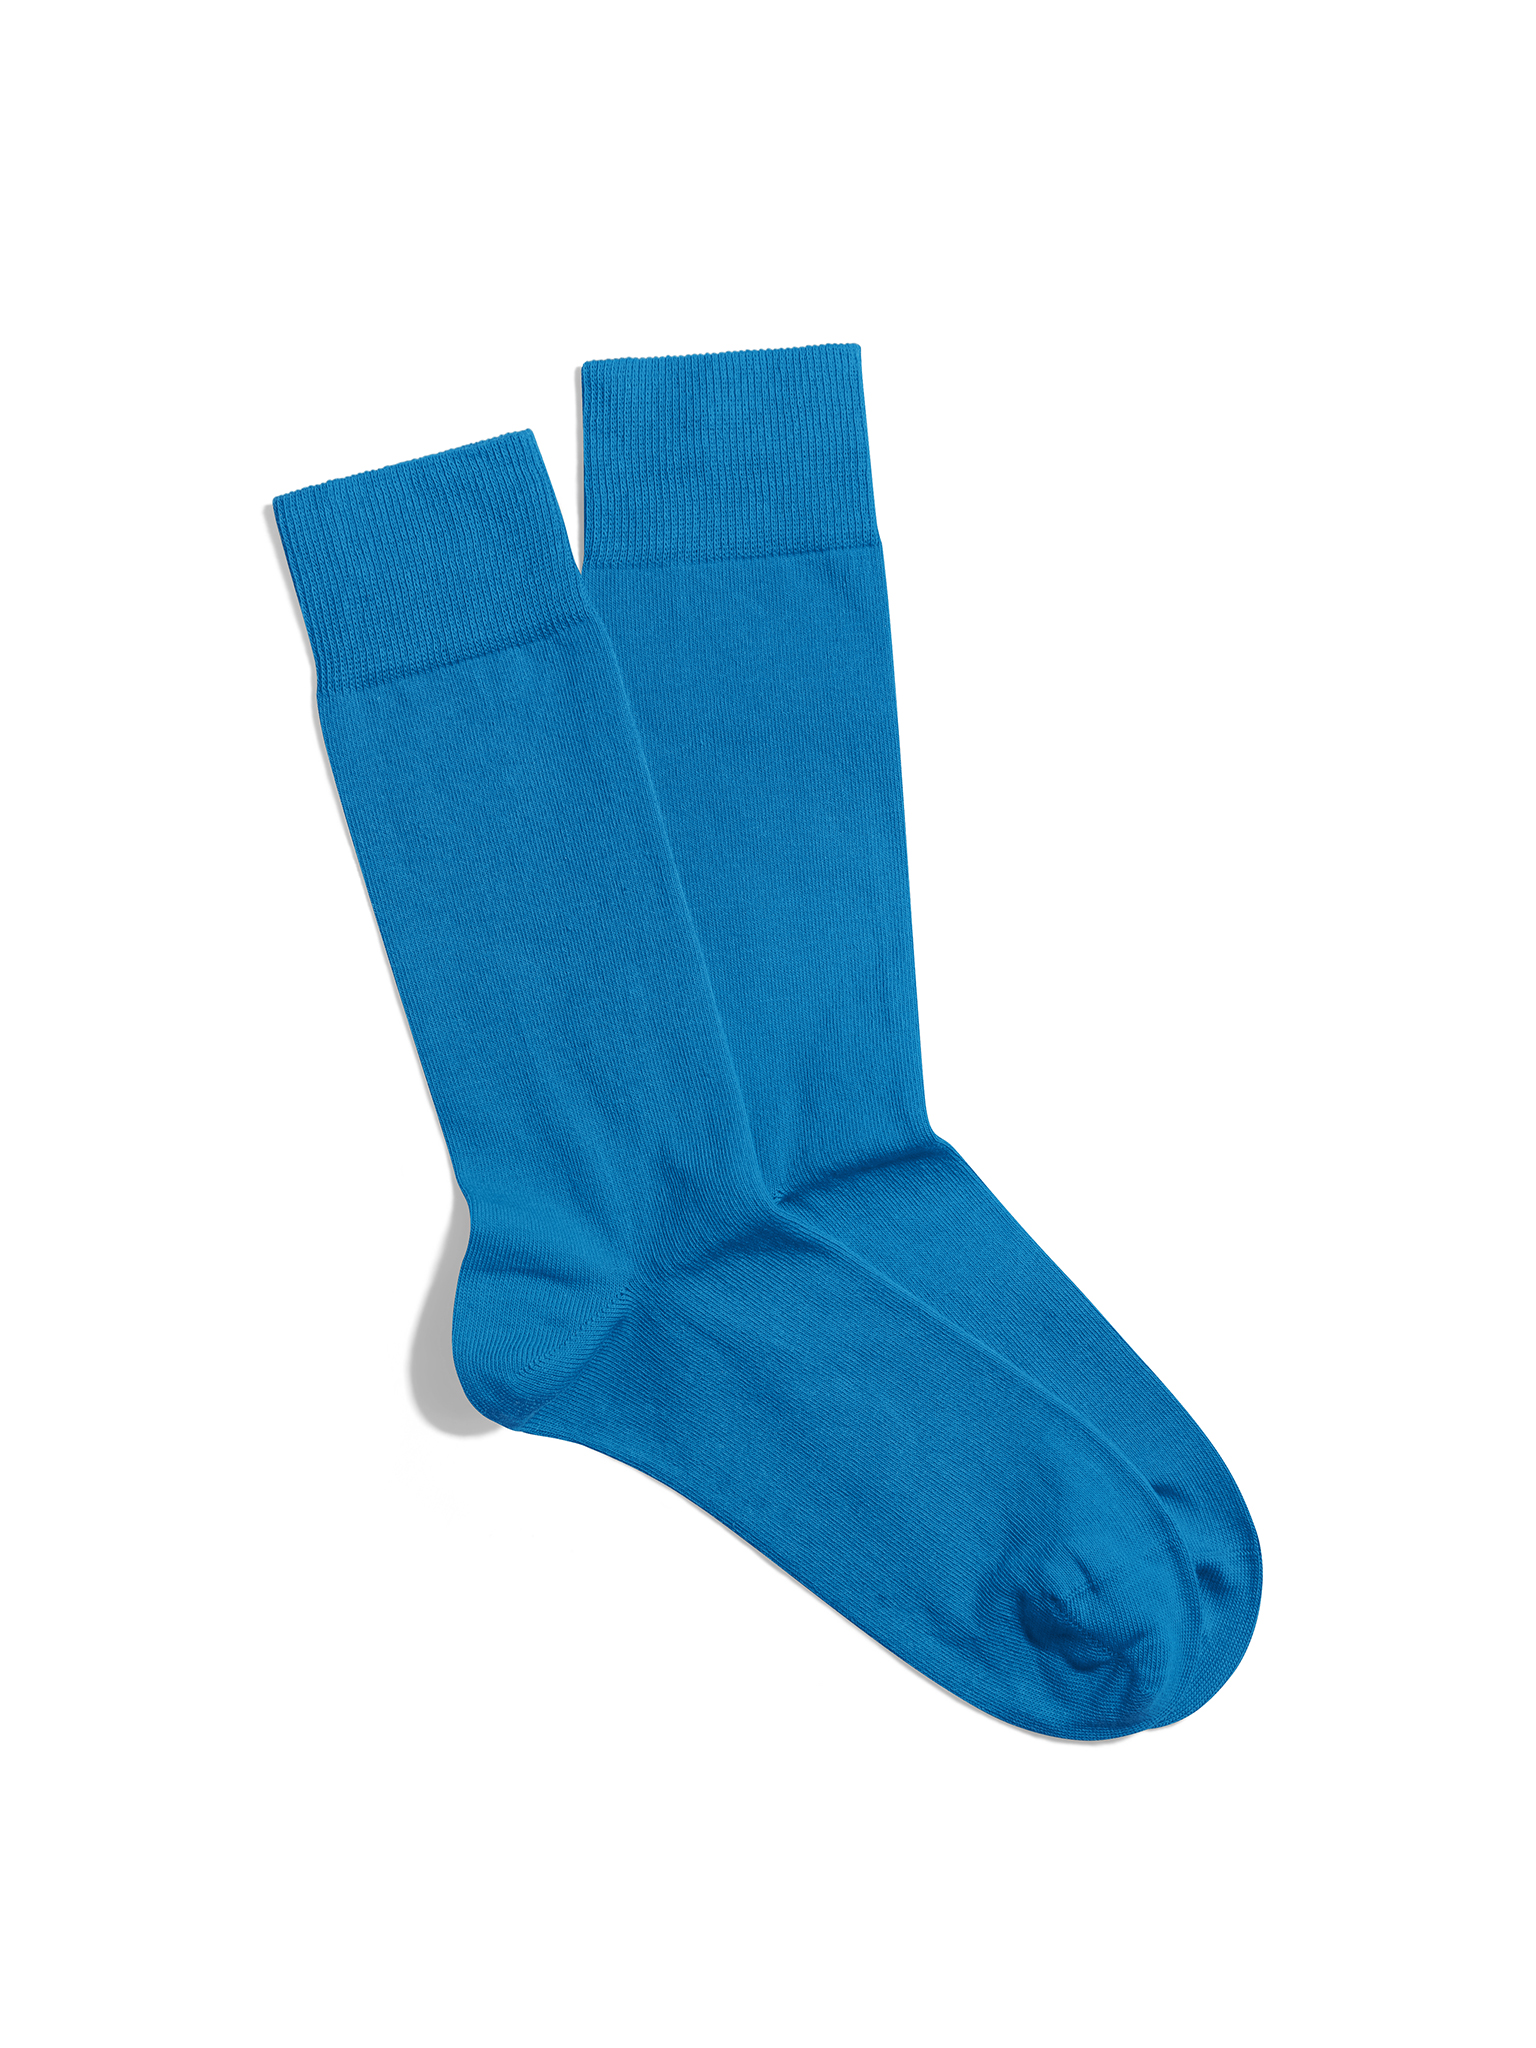 Banana Socks Unisex's Socks Azure Dream